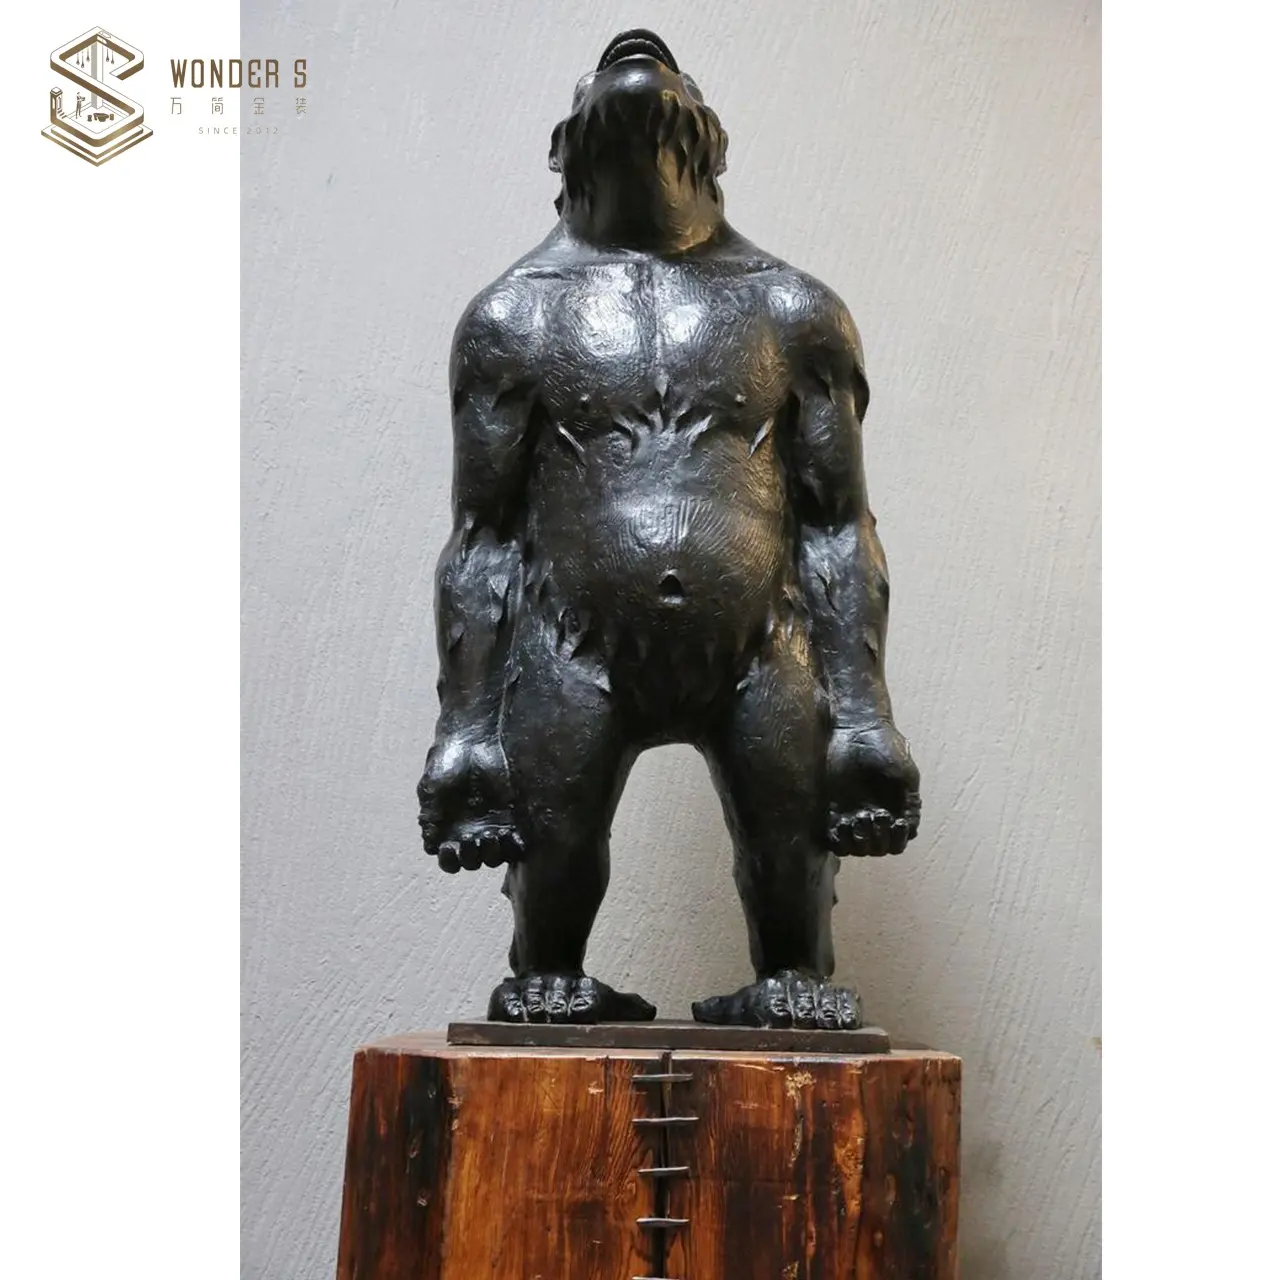 Литейная известная художественная репродукция, металлическая бронзовая скульптура gorilla в натуральную величину